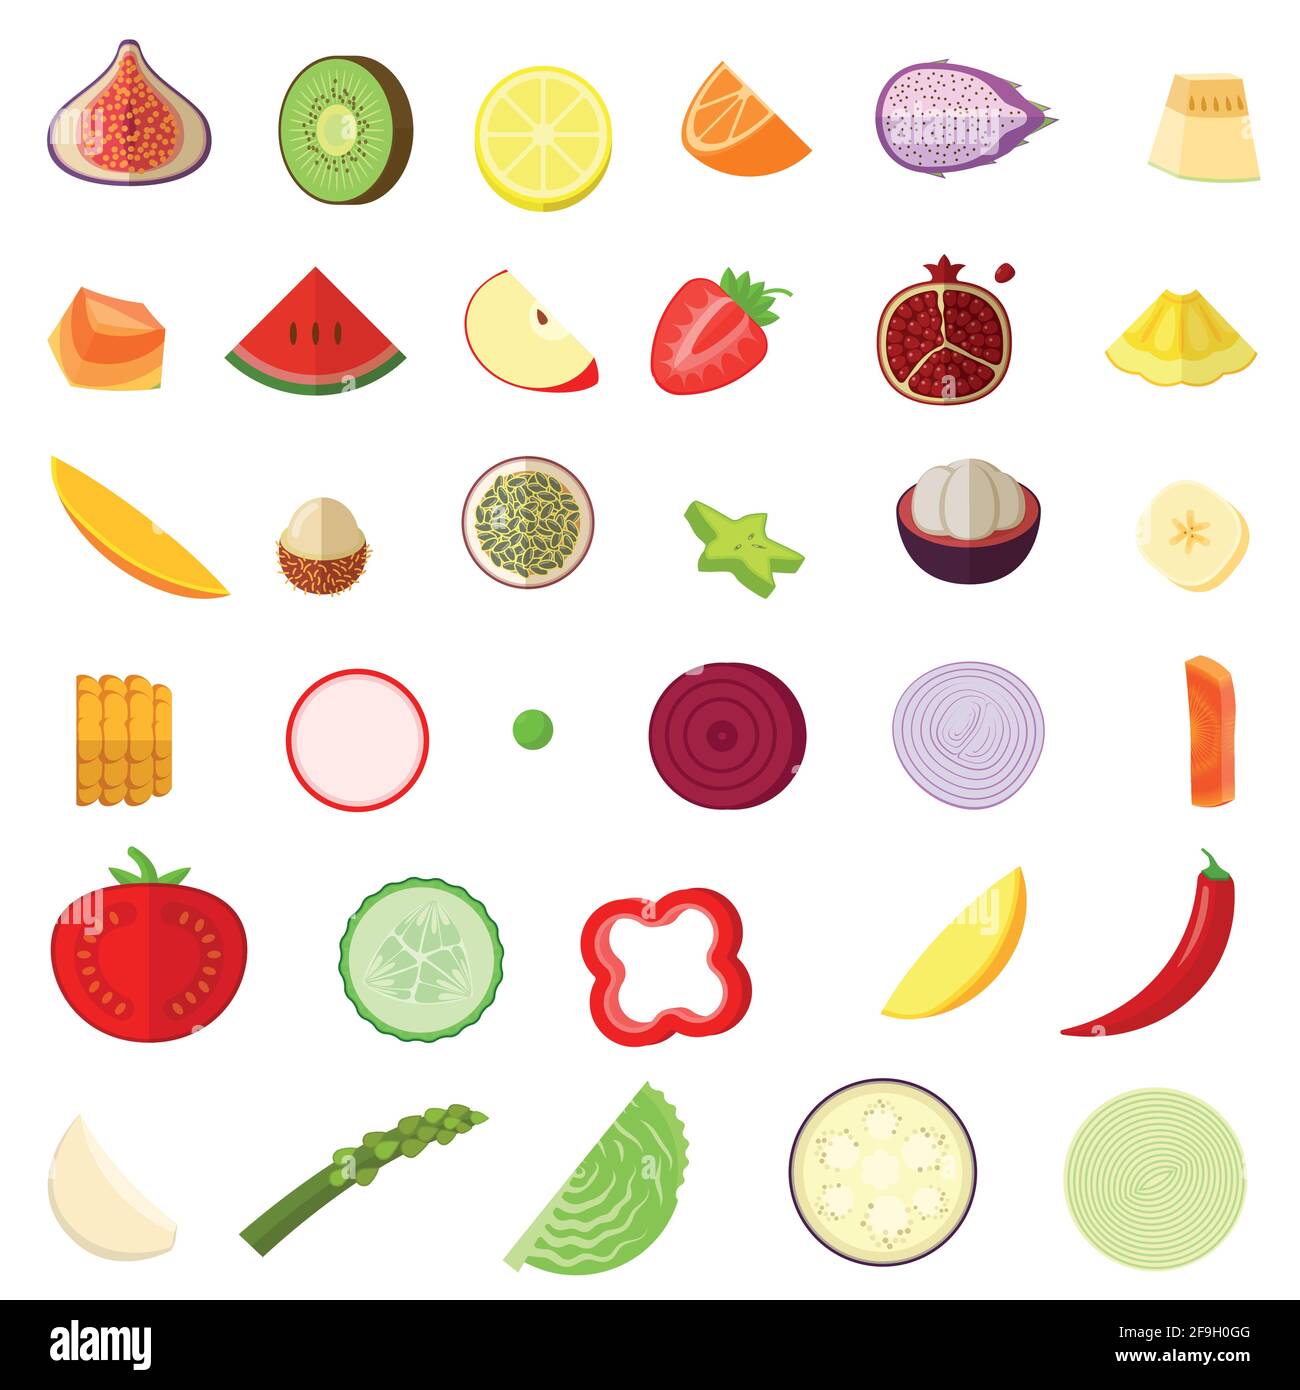 Obst- und Gemüsescheiben Stock Vektor